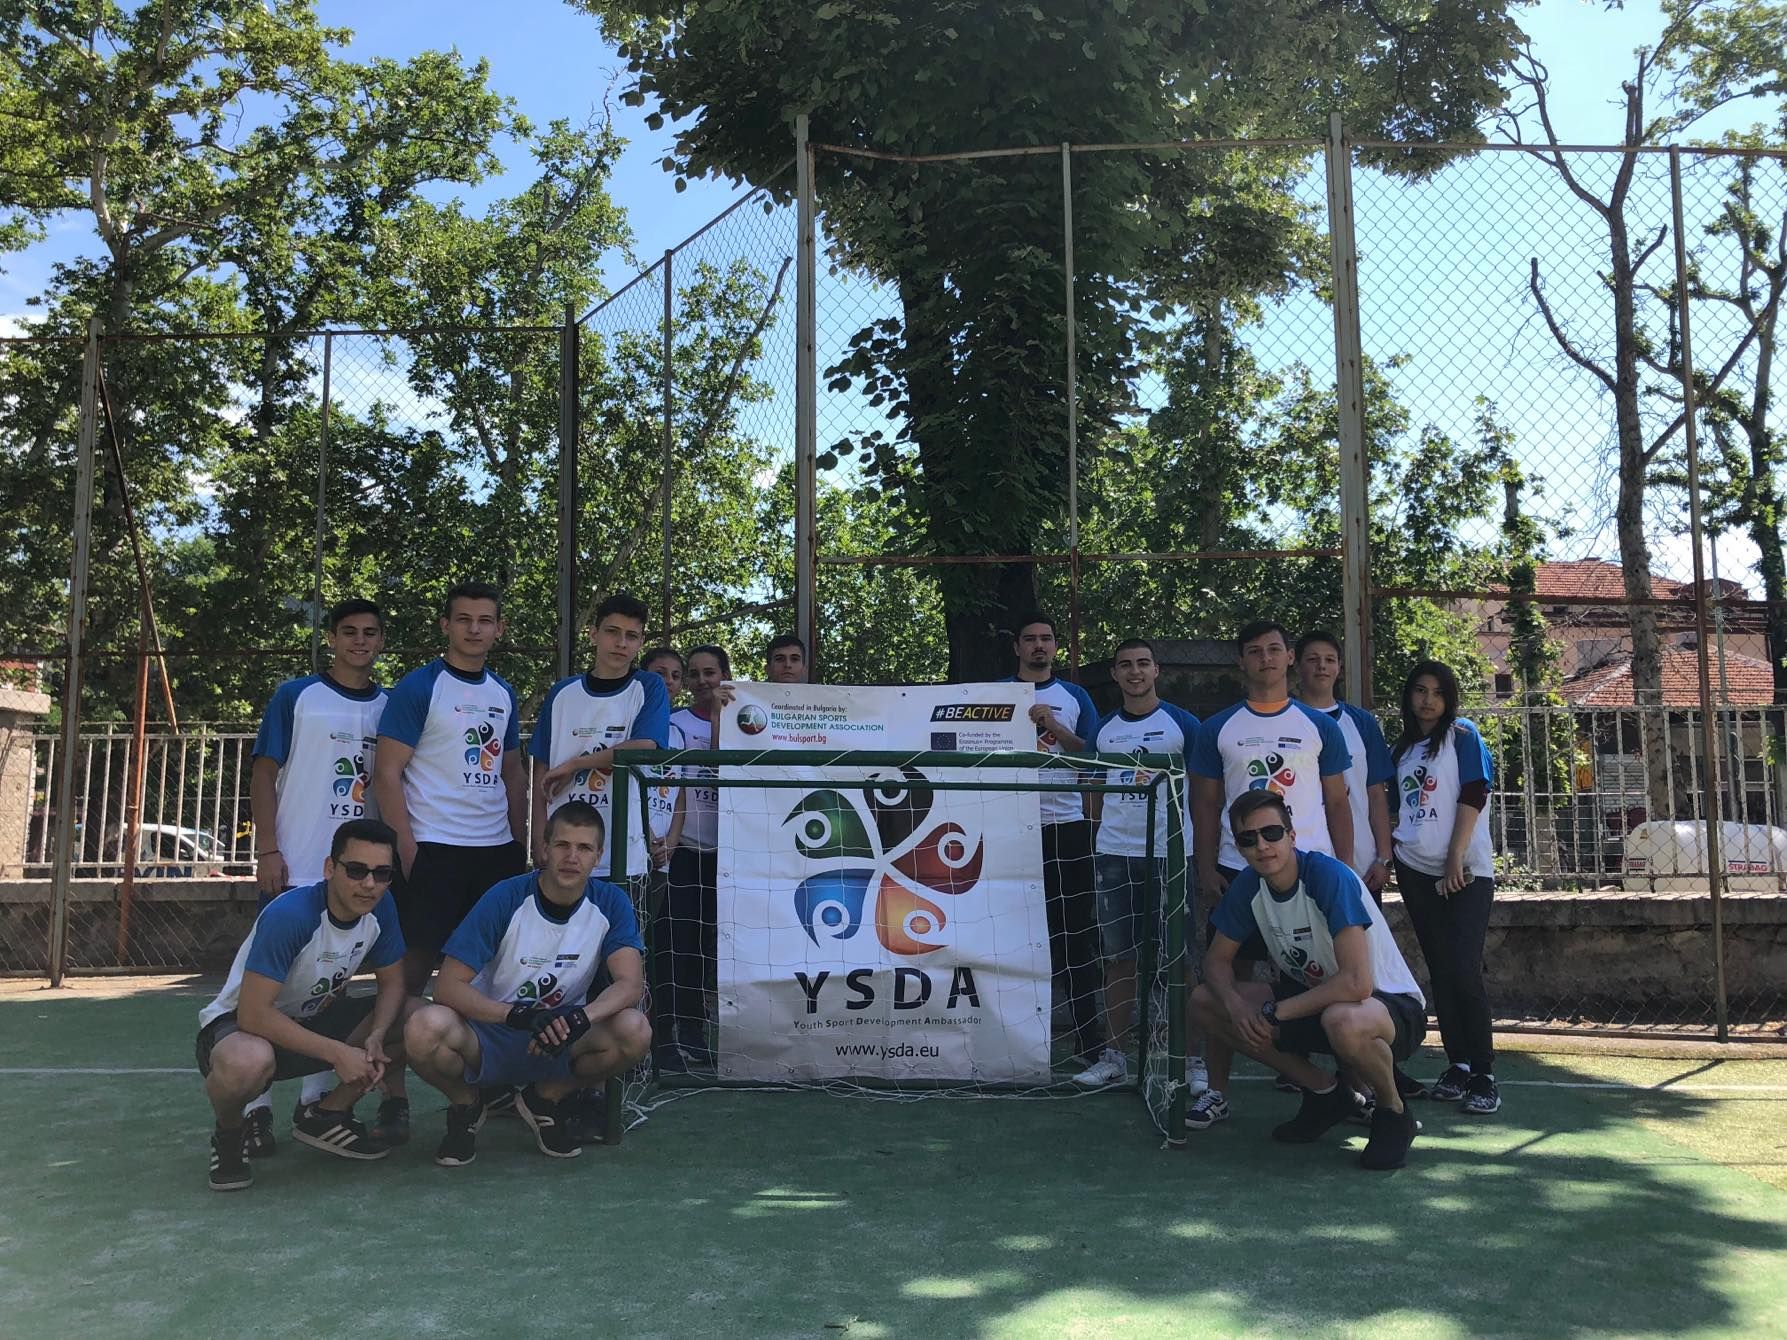 Локални събития - Млади посланици на спортното развитие YSDA